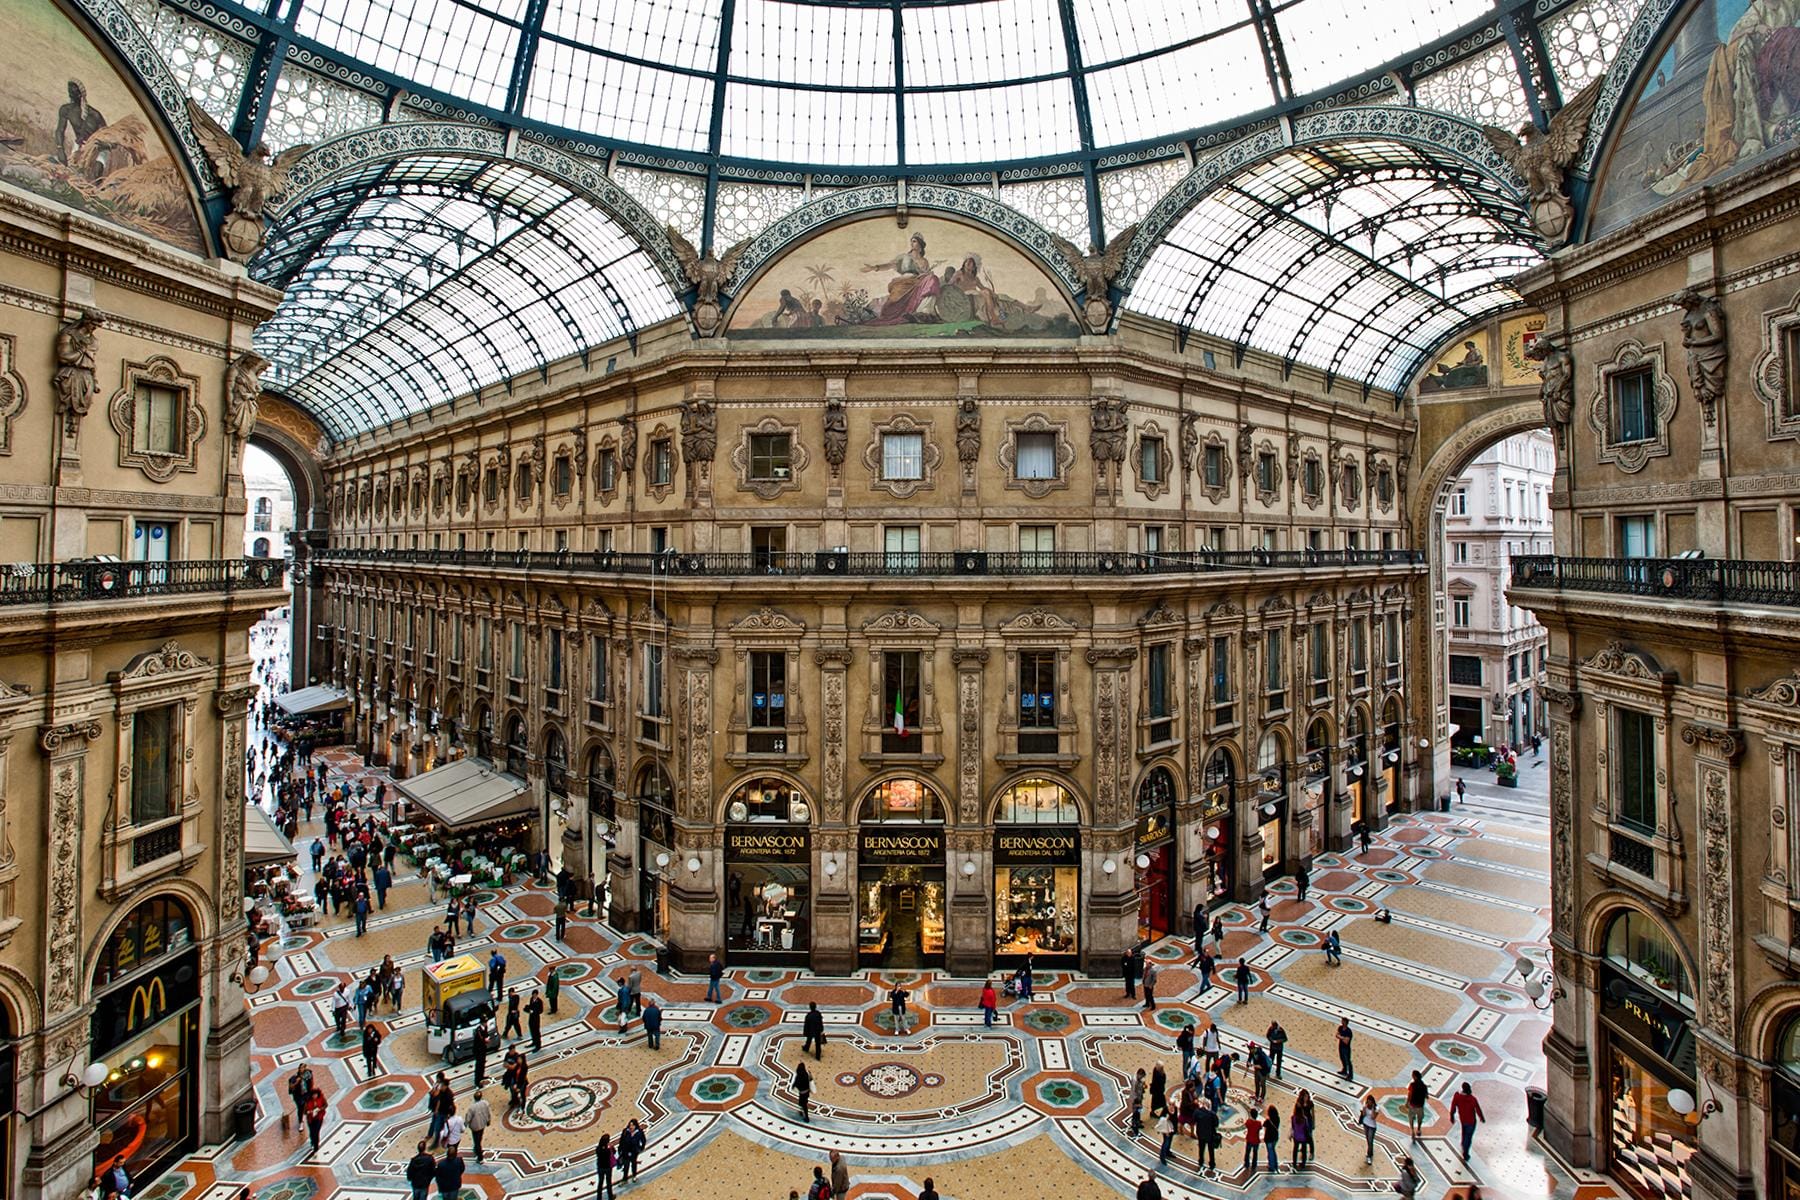 The Obligatory Trinity: The Duomo, The Galleria Vittorio Emanuele II, and Teatro alla Scala